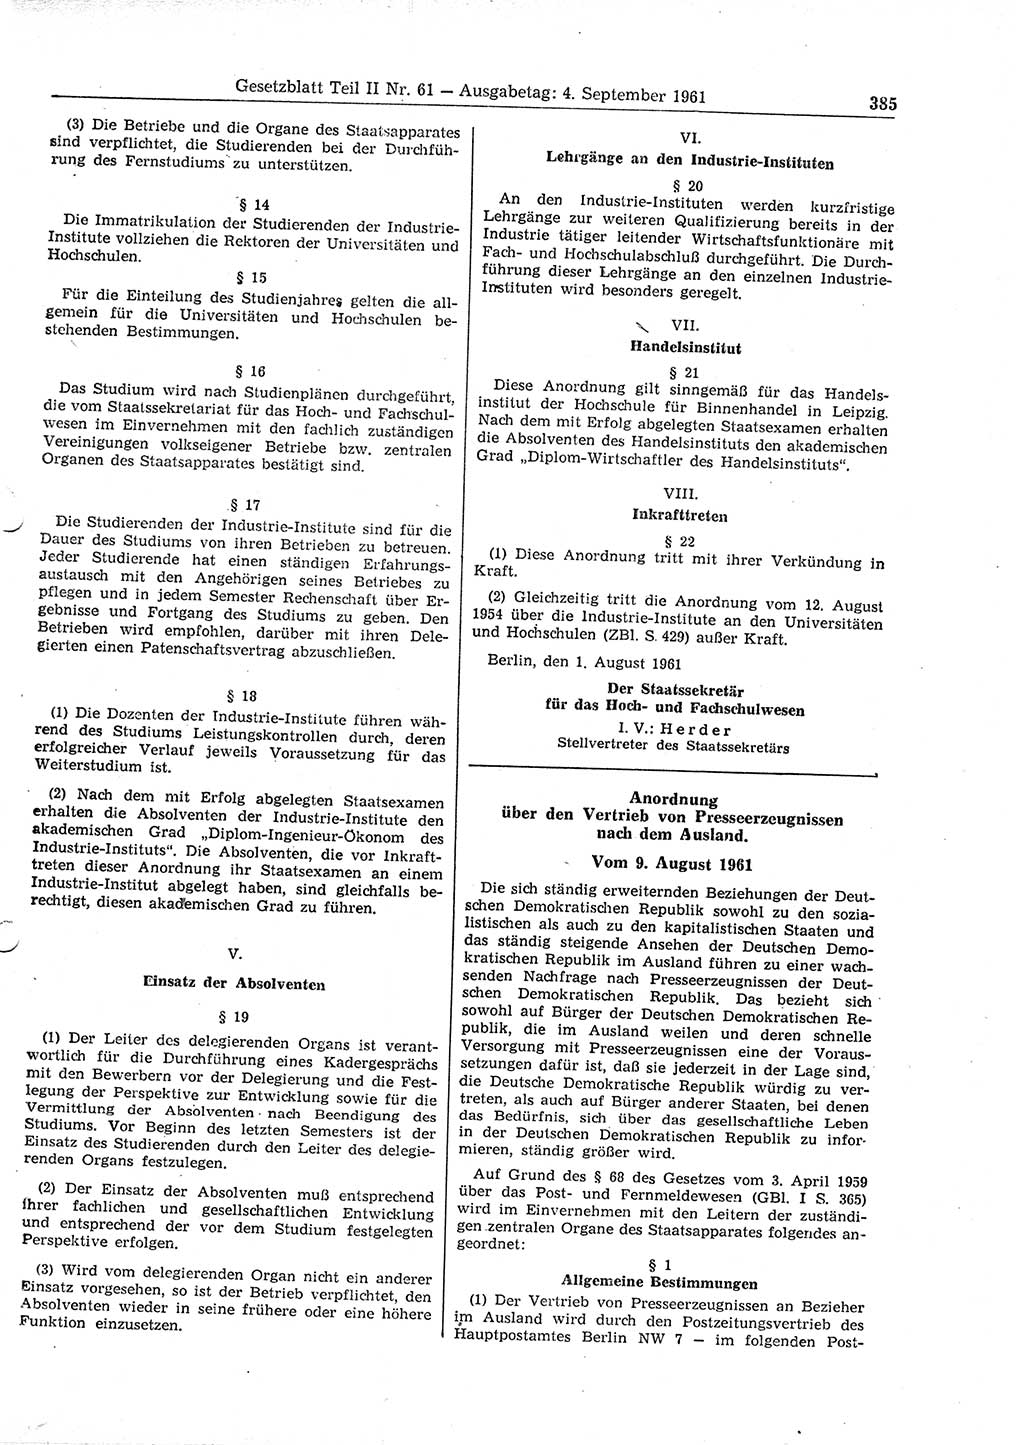 Gesetzblatt (GBl.) der Deutschen Demokratischen Republik (DDR) Teil ⅠⅠ 1961, Seite 385 (GBl. DDR ⅠⅠ 1961, S. 385)